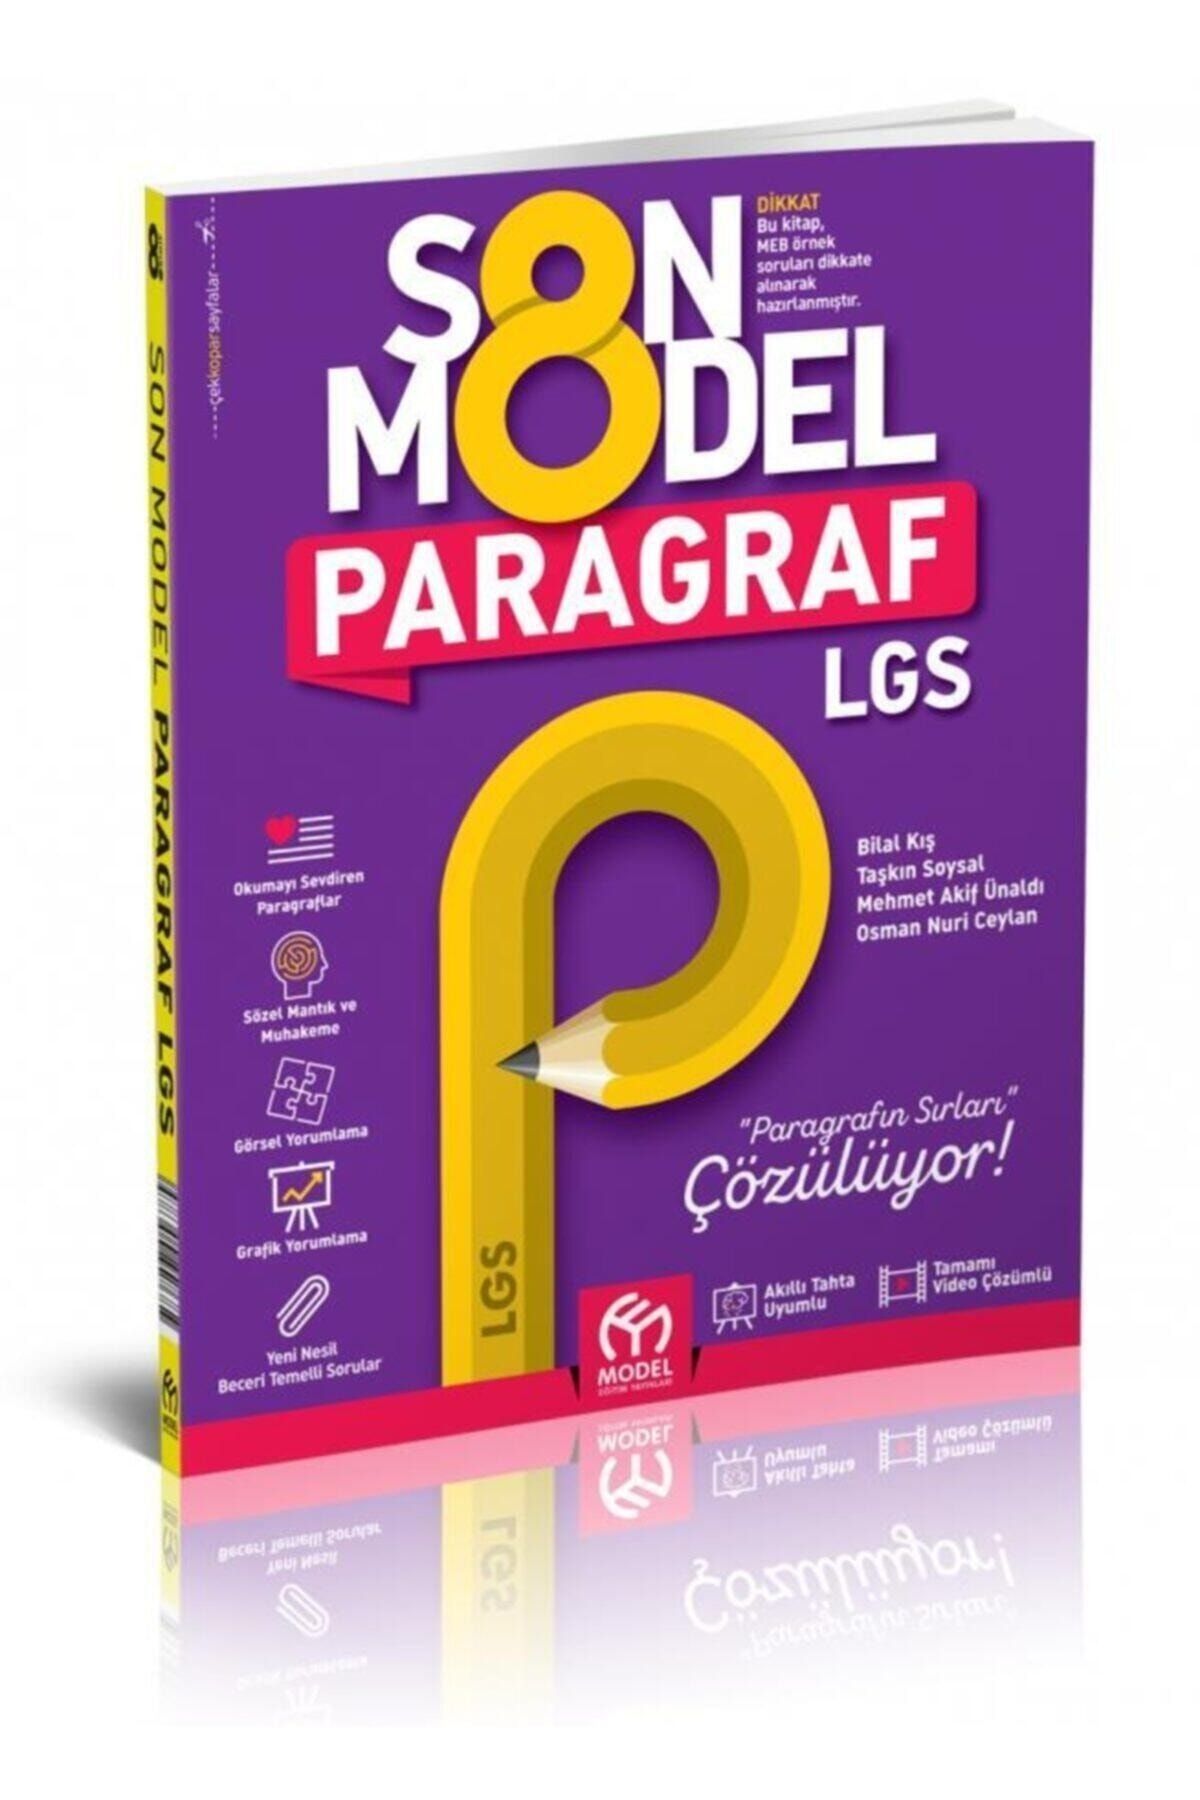 Model Eğitim Yayınları 8. Sınıf Lgs Paragraf Son Model Soru Bankası